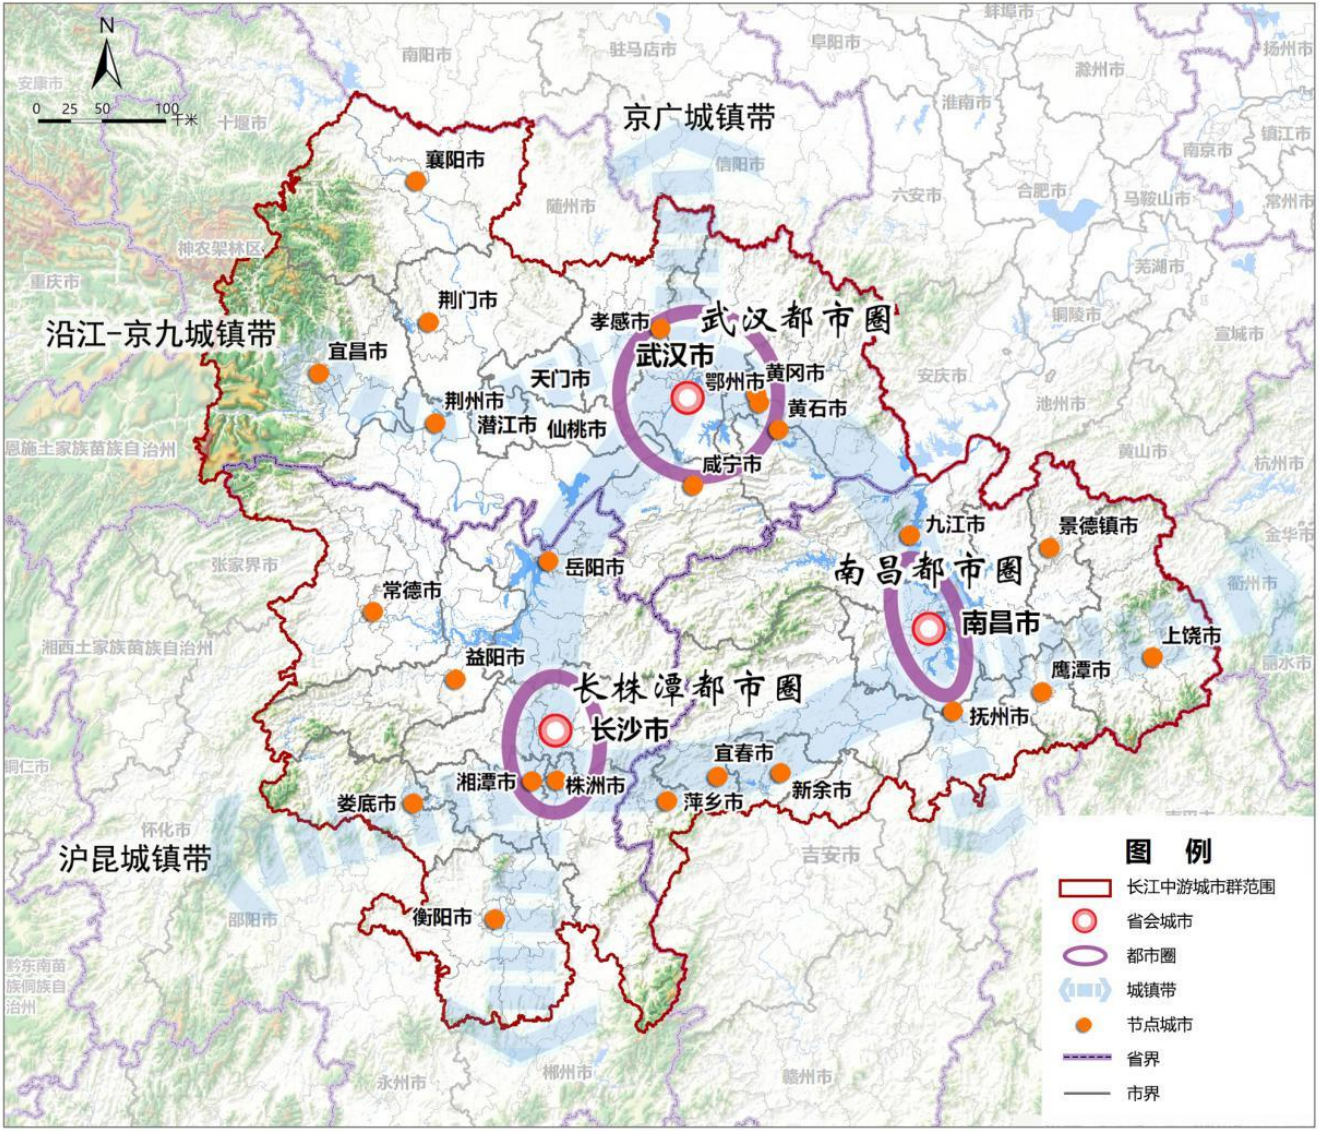 图 1 长江中游城市群空间格局示意图